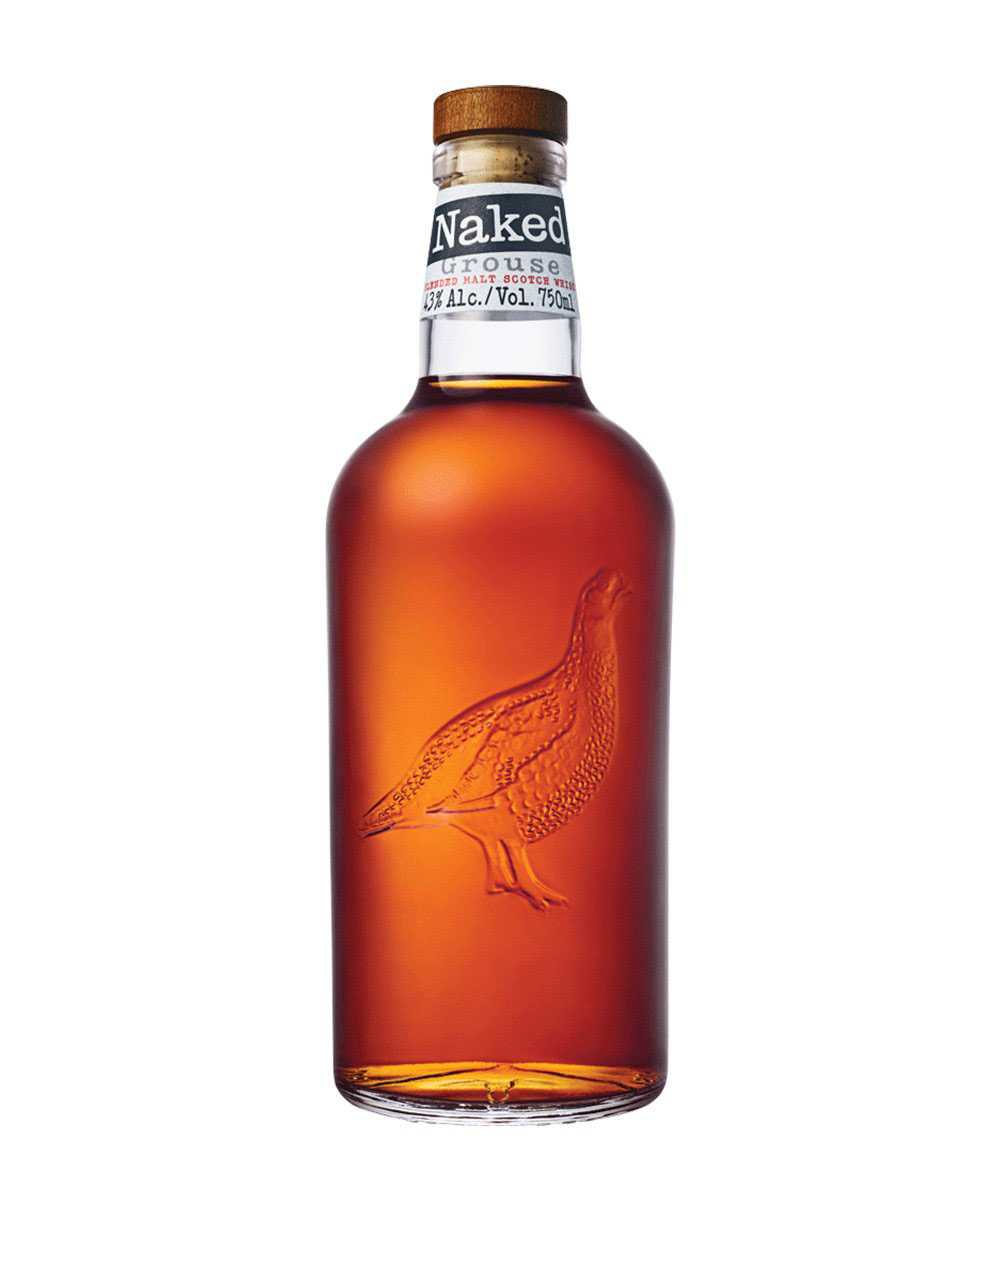 Naked Grouse Scotch Whisky